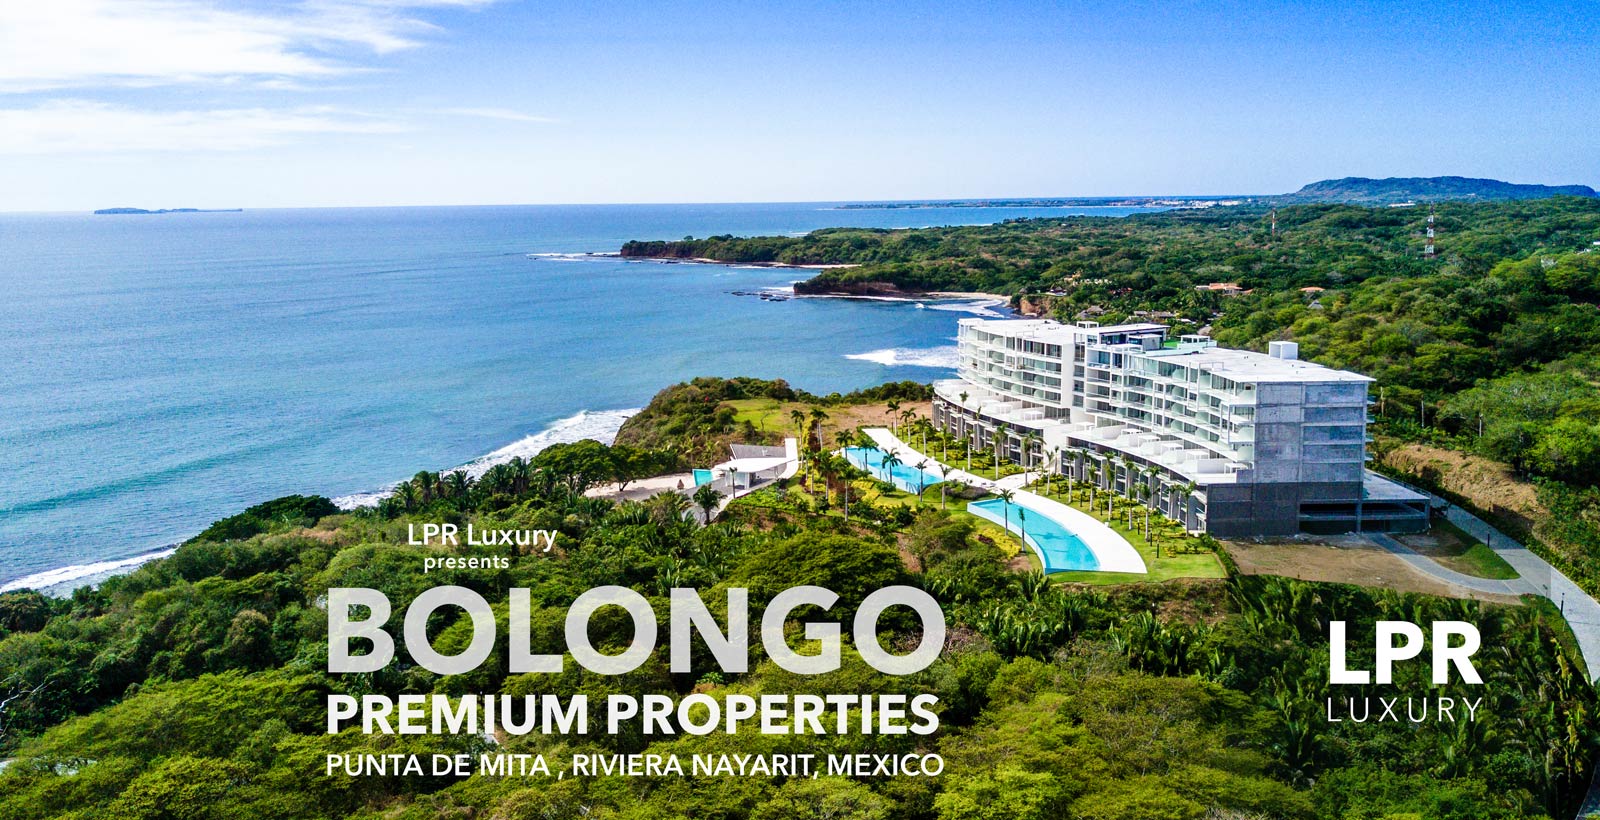 Bolongo - Luxury Punta de Mita beachfront condos - Riviera Nayarit, Mexico